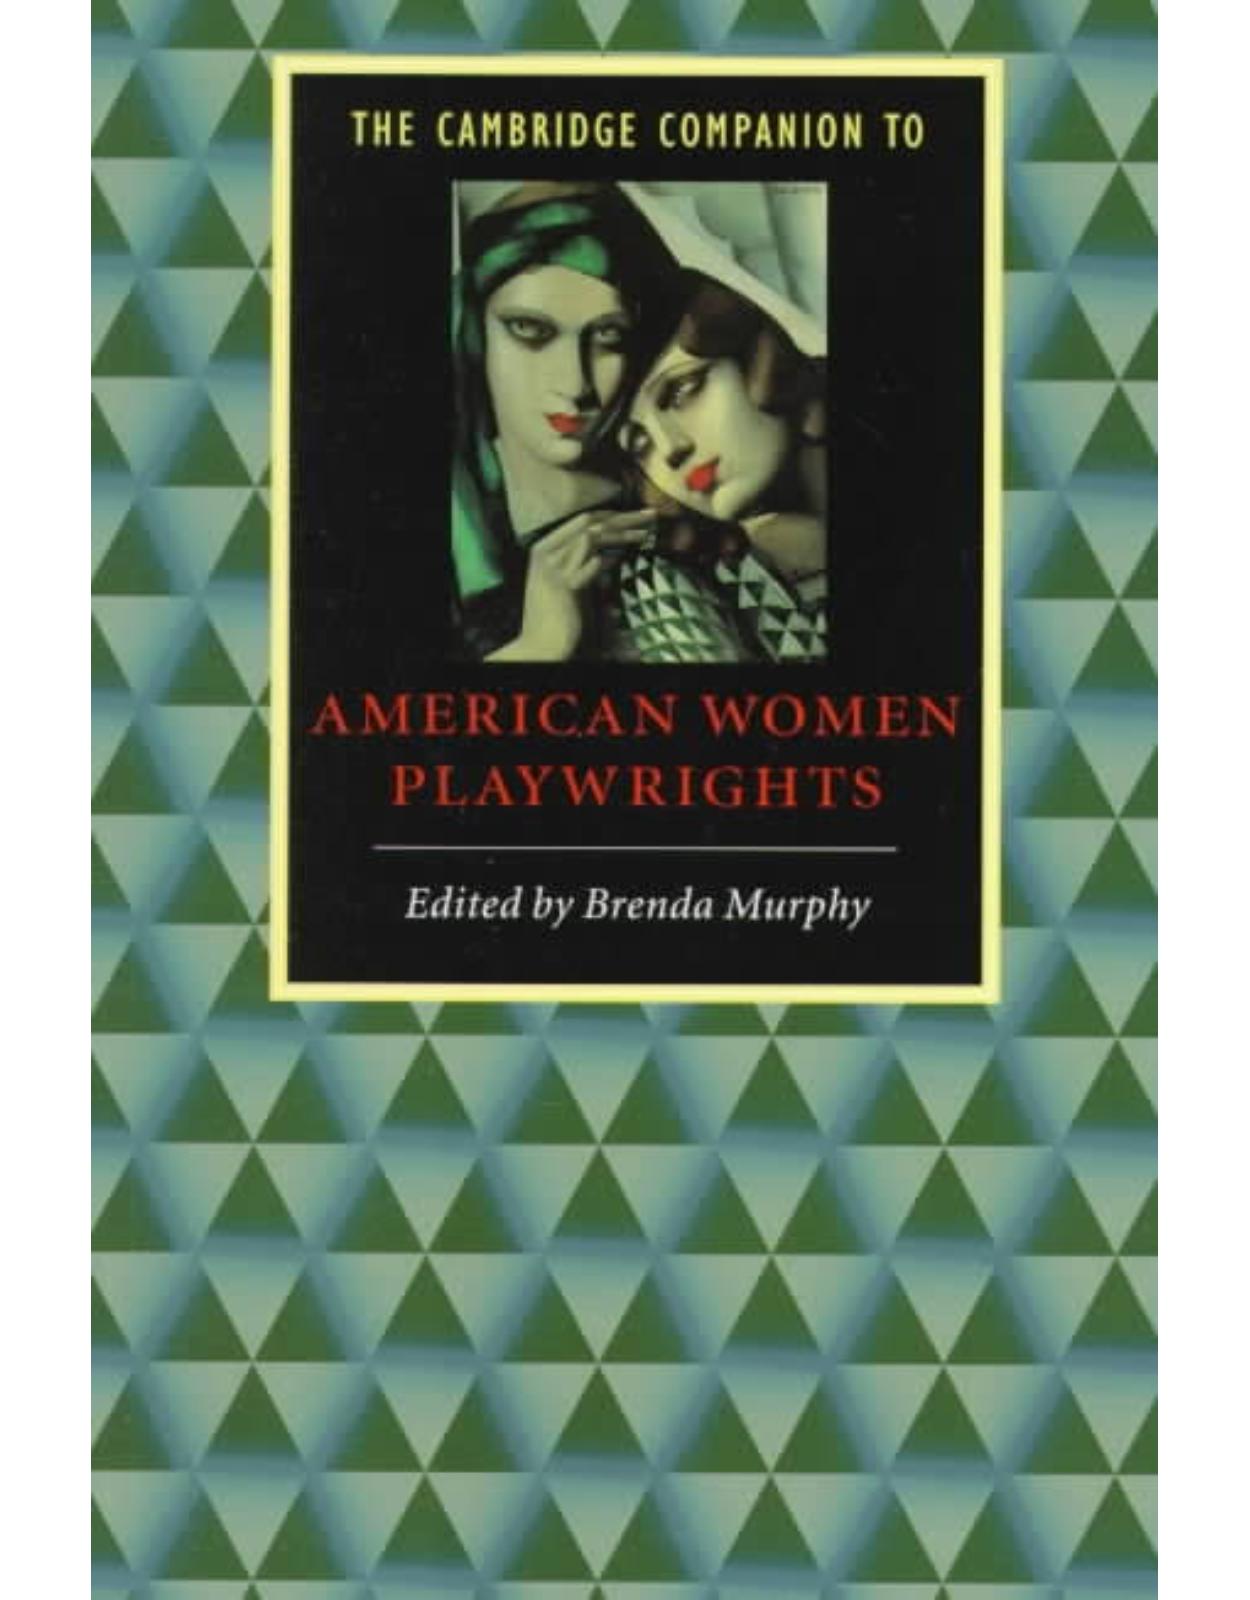 The Cambridge Companion to American Women Playwrights (Cambridge Companions to Literature)